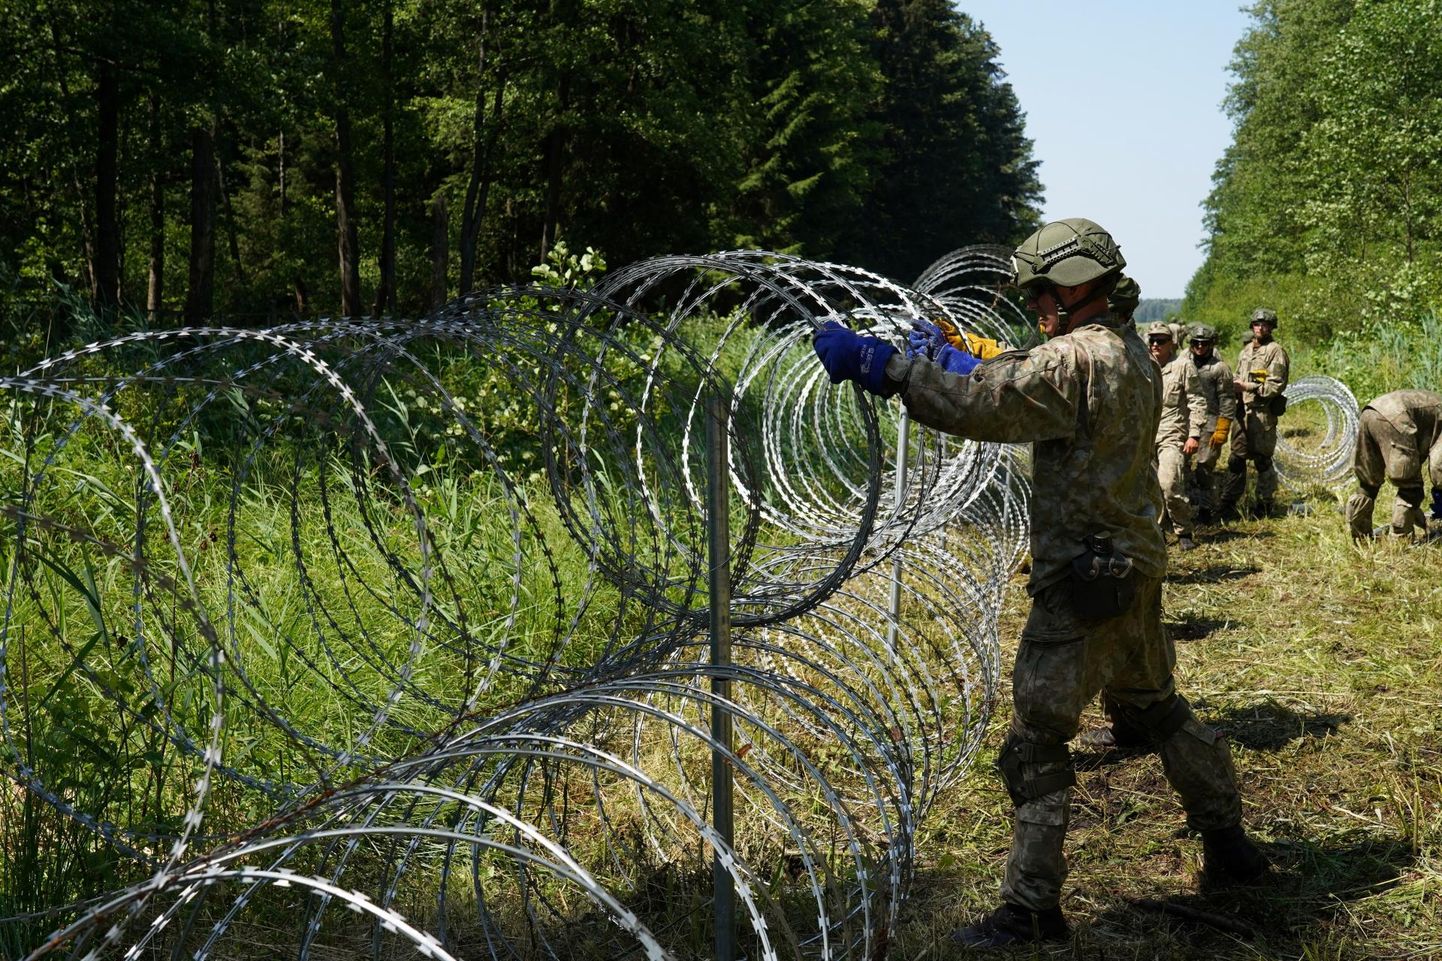 Leedu kaitseväelased Druskininkai piiritsoonis lõiketraati paigaldamas.  FOTO: Jānis Laizāns / Reuters / Scanpix